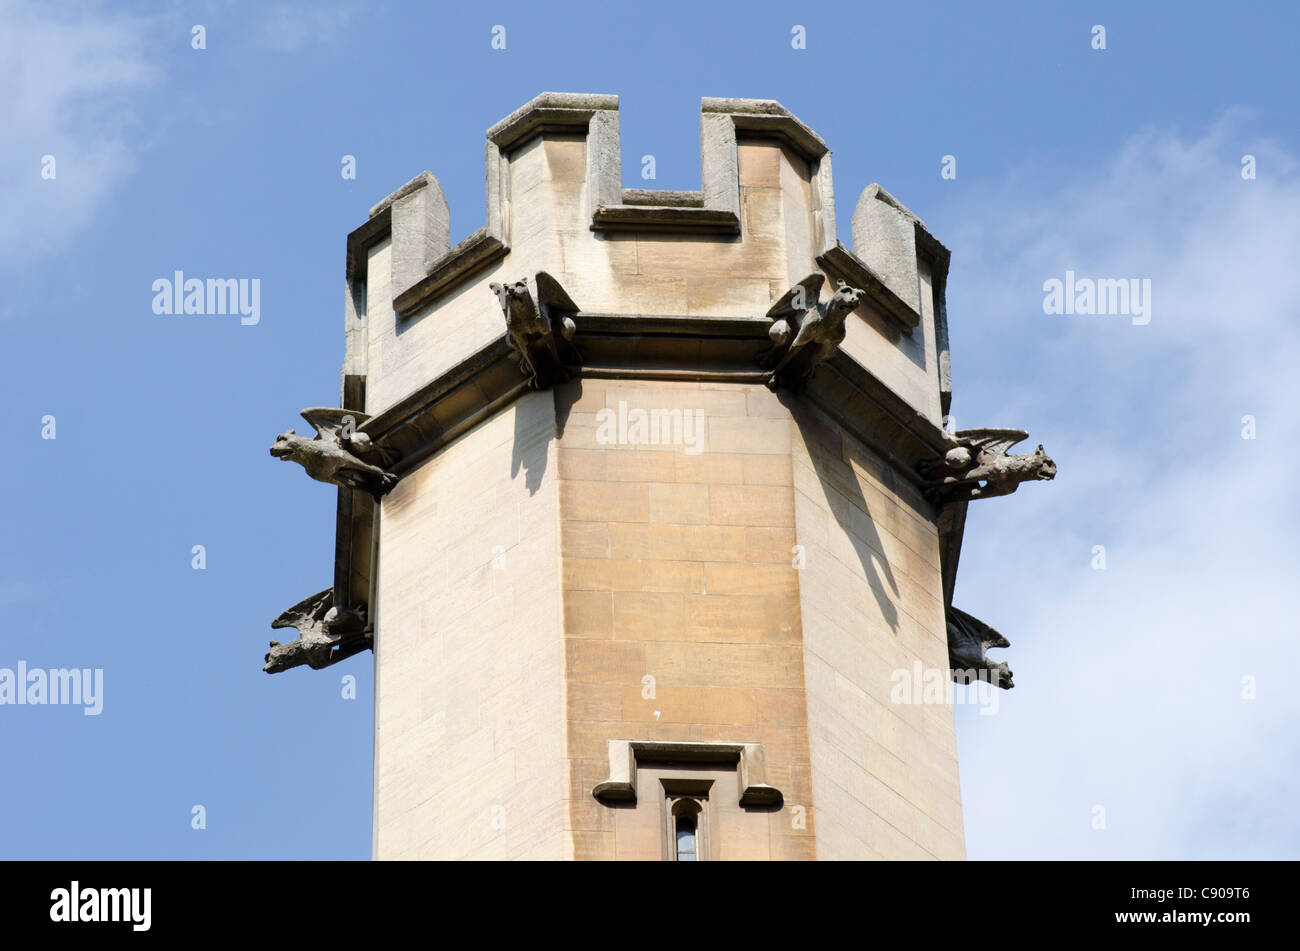 Castellated turret, Cambridge, England, UK Stock Photo